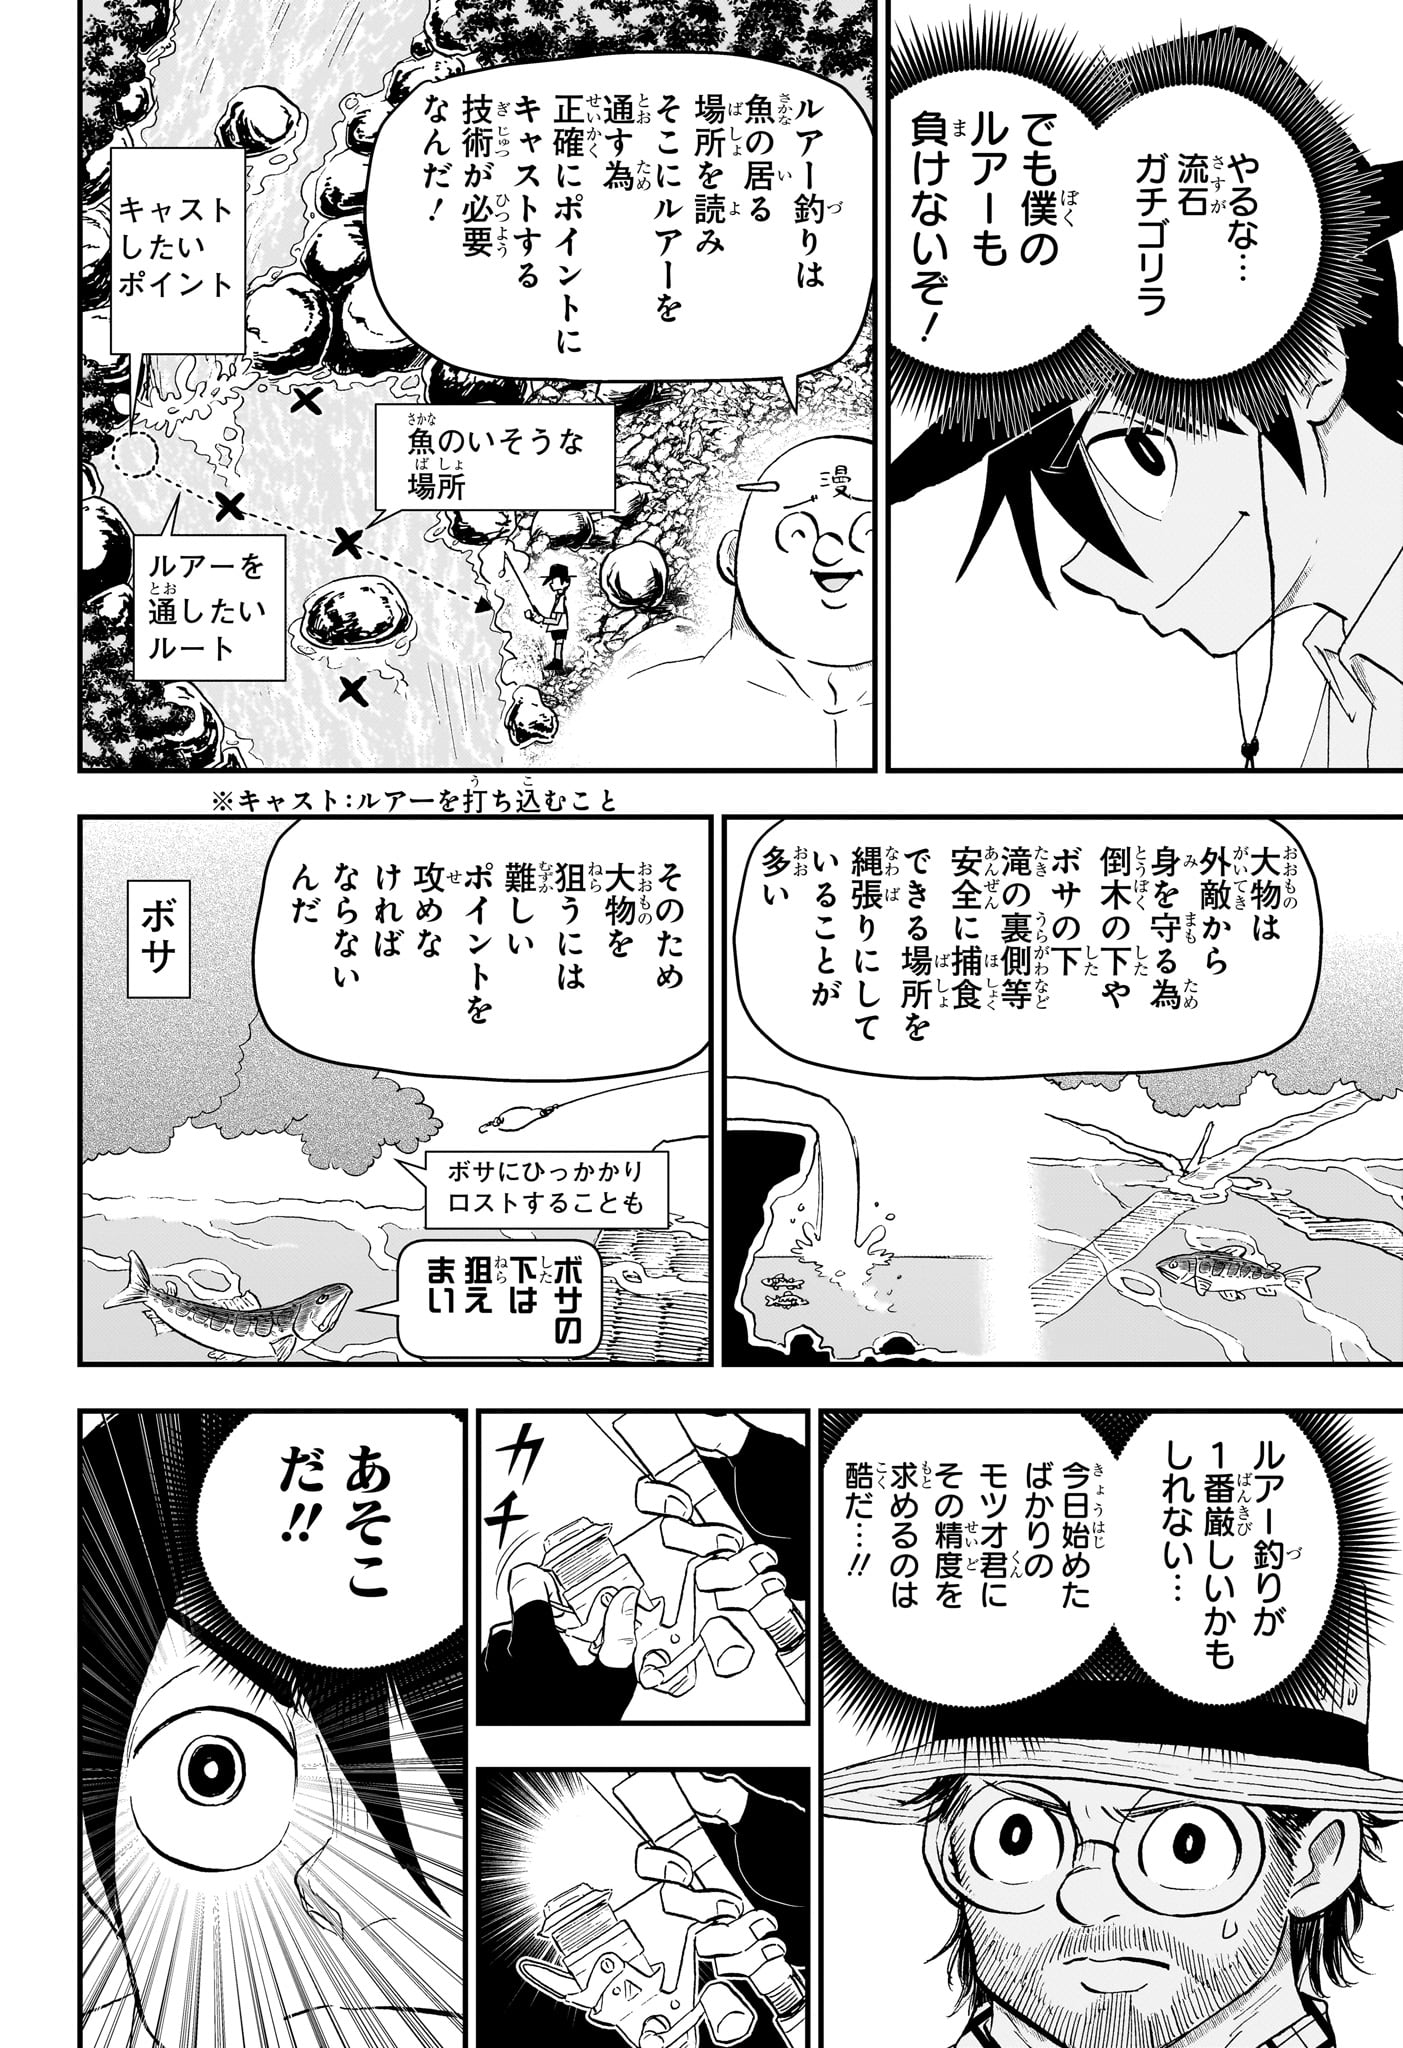 Boku to Roboko - Chapter 188 - Page 7